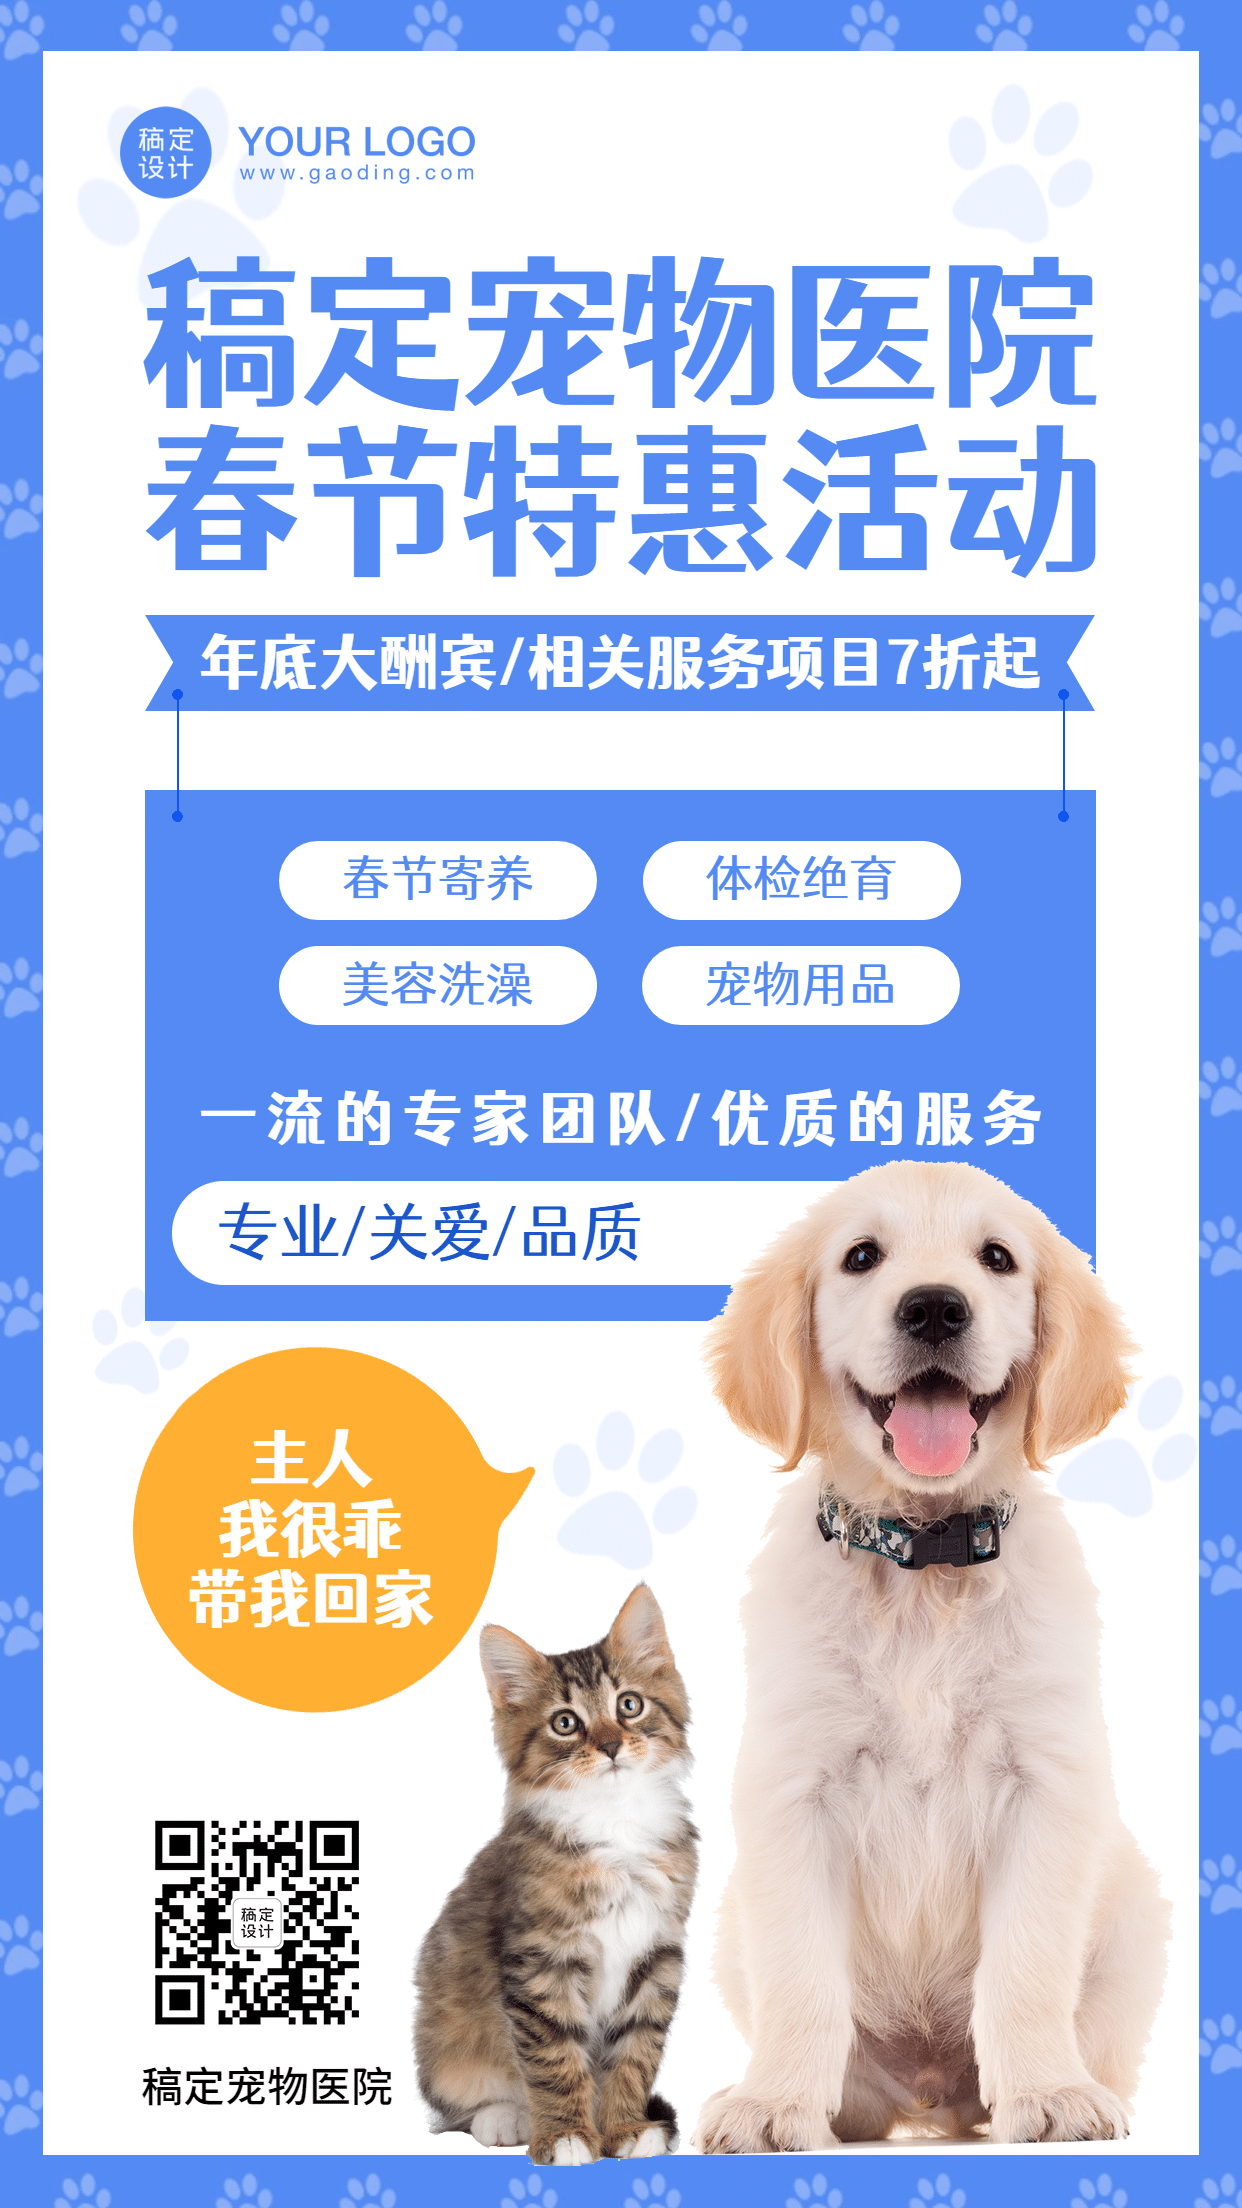 春节宠物寄养活动手机海报预览效果